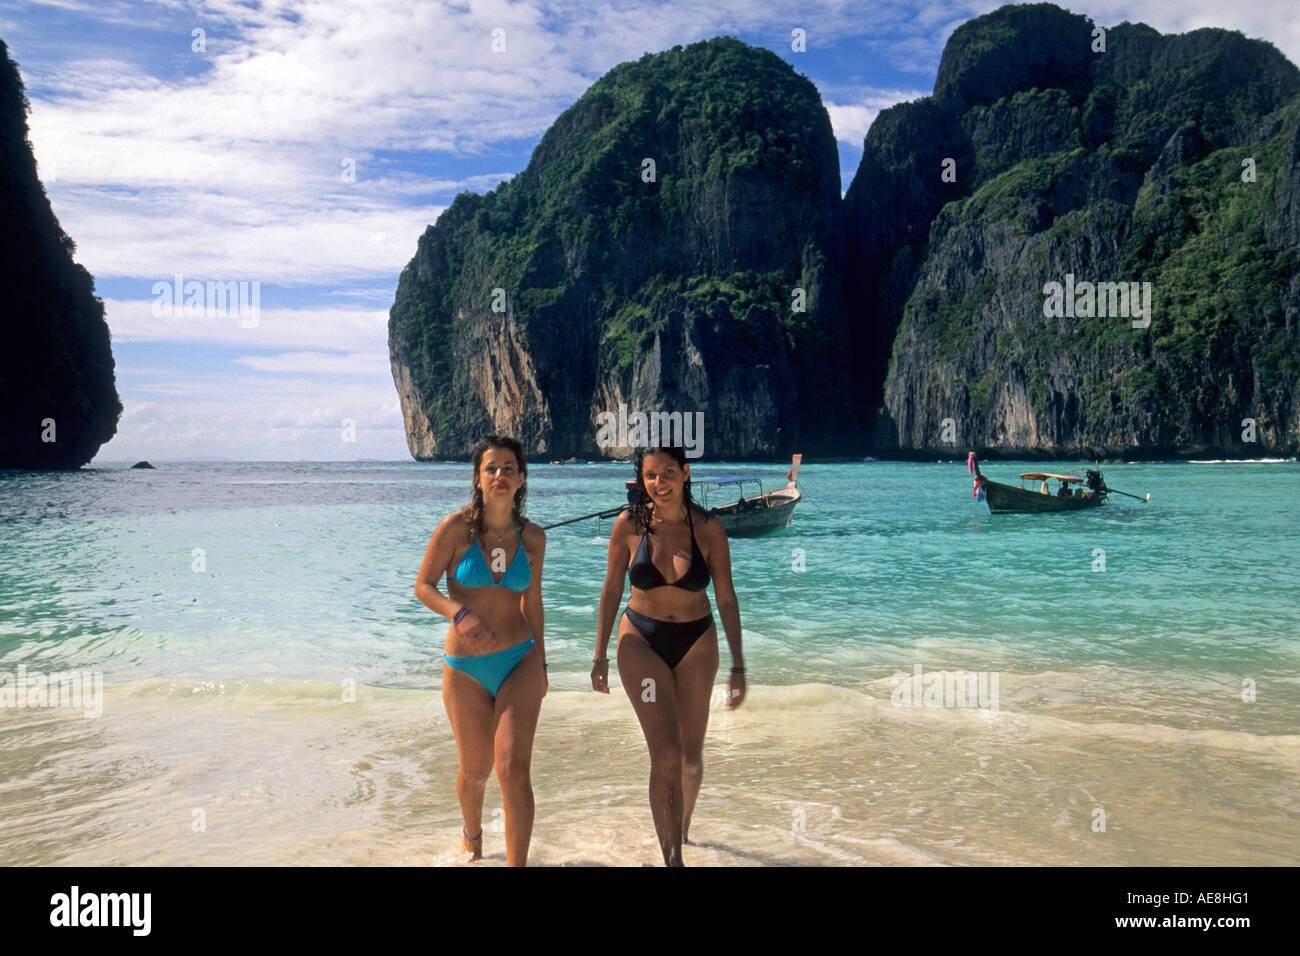 Тайланд стоит ли ехать отдыхать. Остров Джеймса Бонда в Тайланде фото. Пхи-Пхи Таиланд девушка. Таиланд туристы. Пхукет девушки.